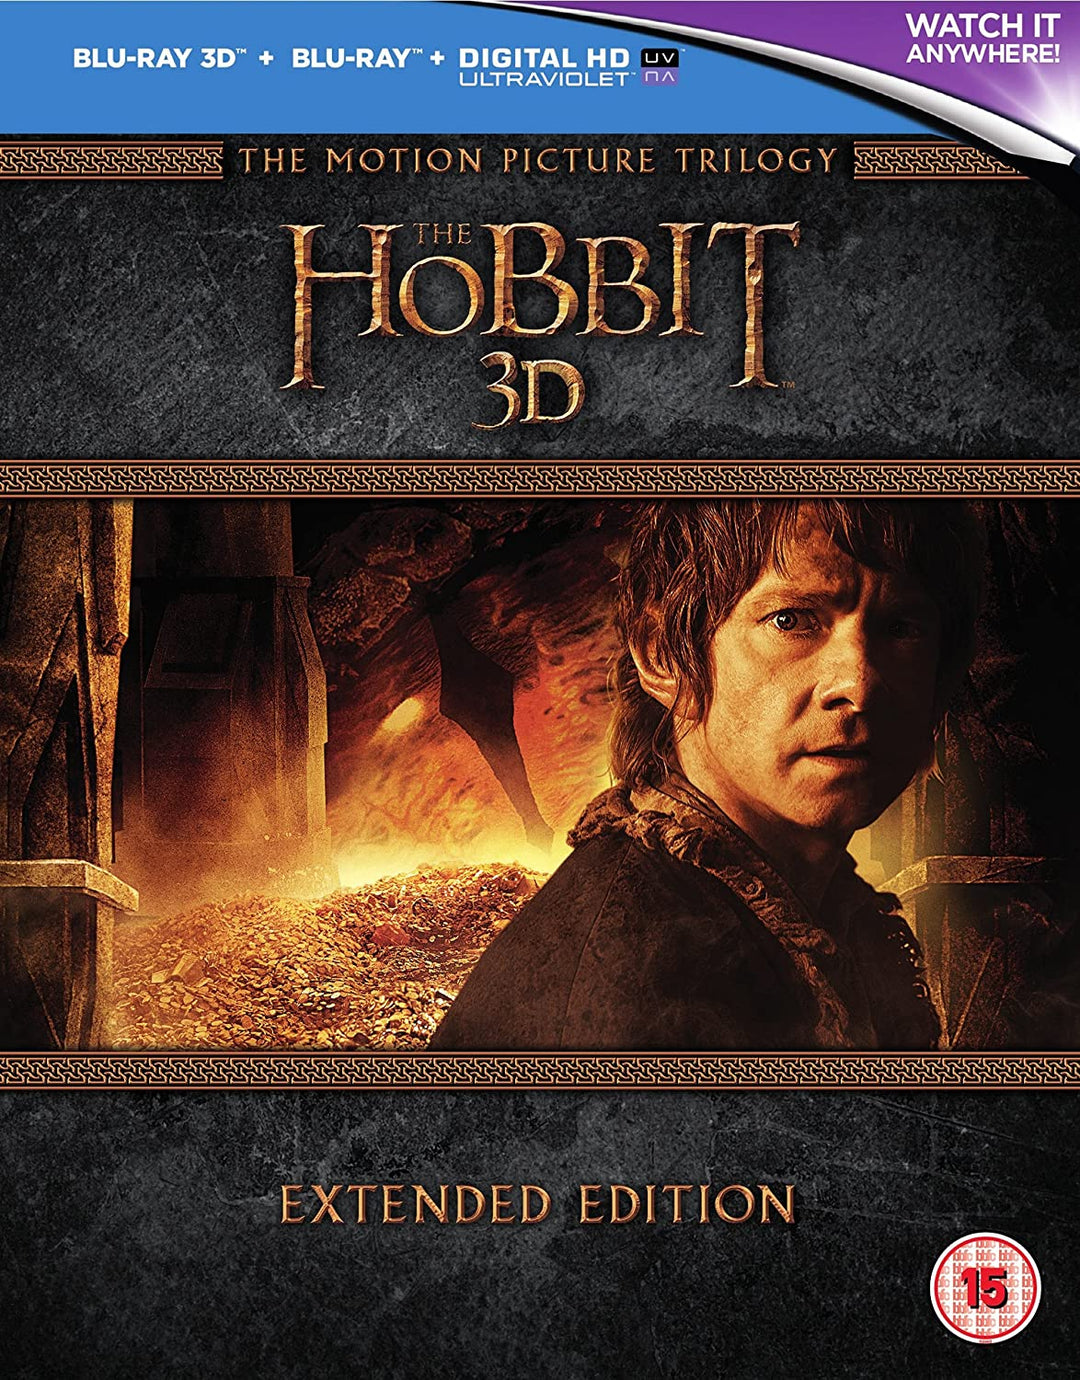 La trilogie Hobbit - Édition étendue [Blu-ray 3D] [2015] [Région gratuite]